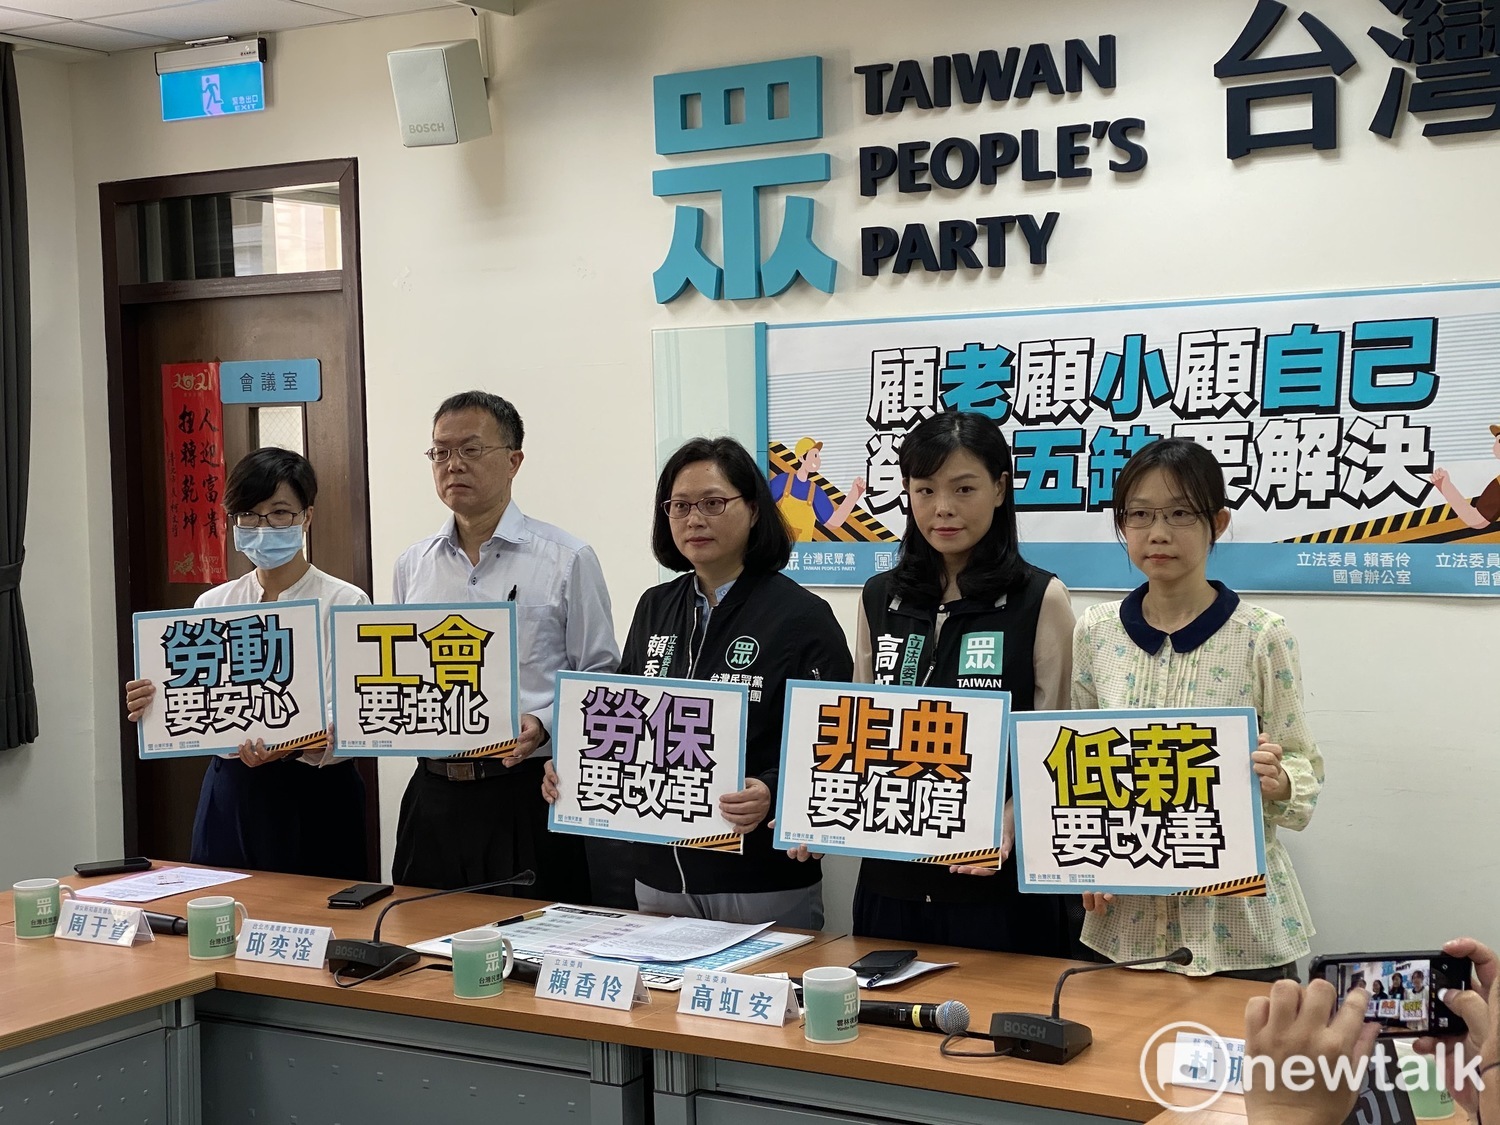 51勞動節前夕 民眾黨團籲政府改革勞保、最低工資立法